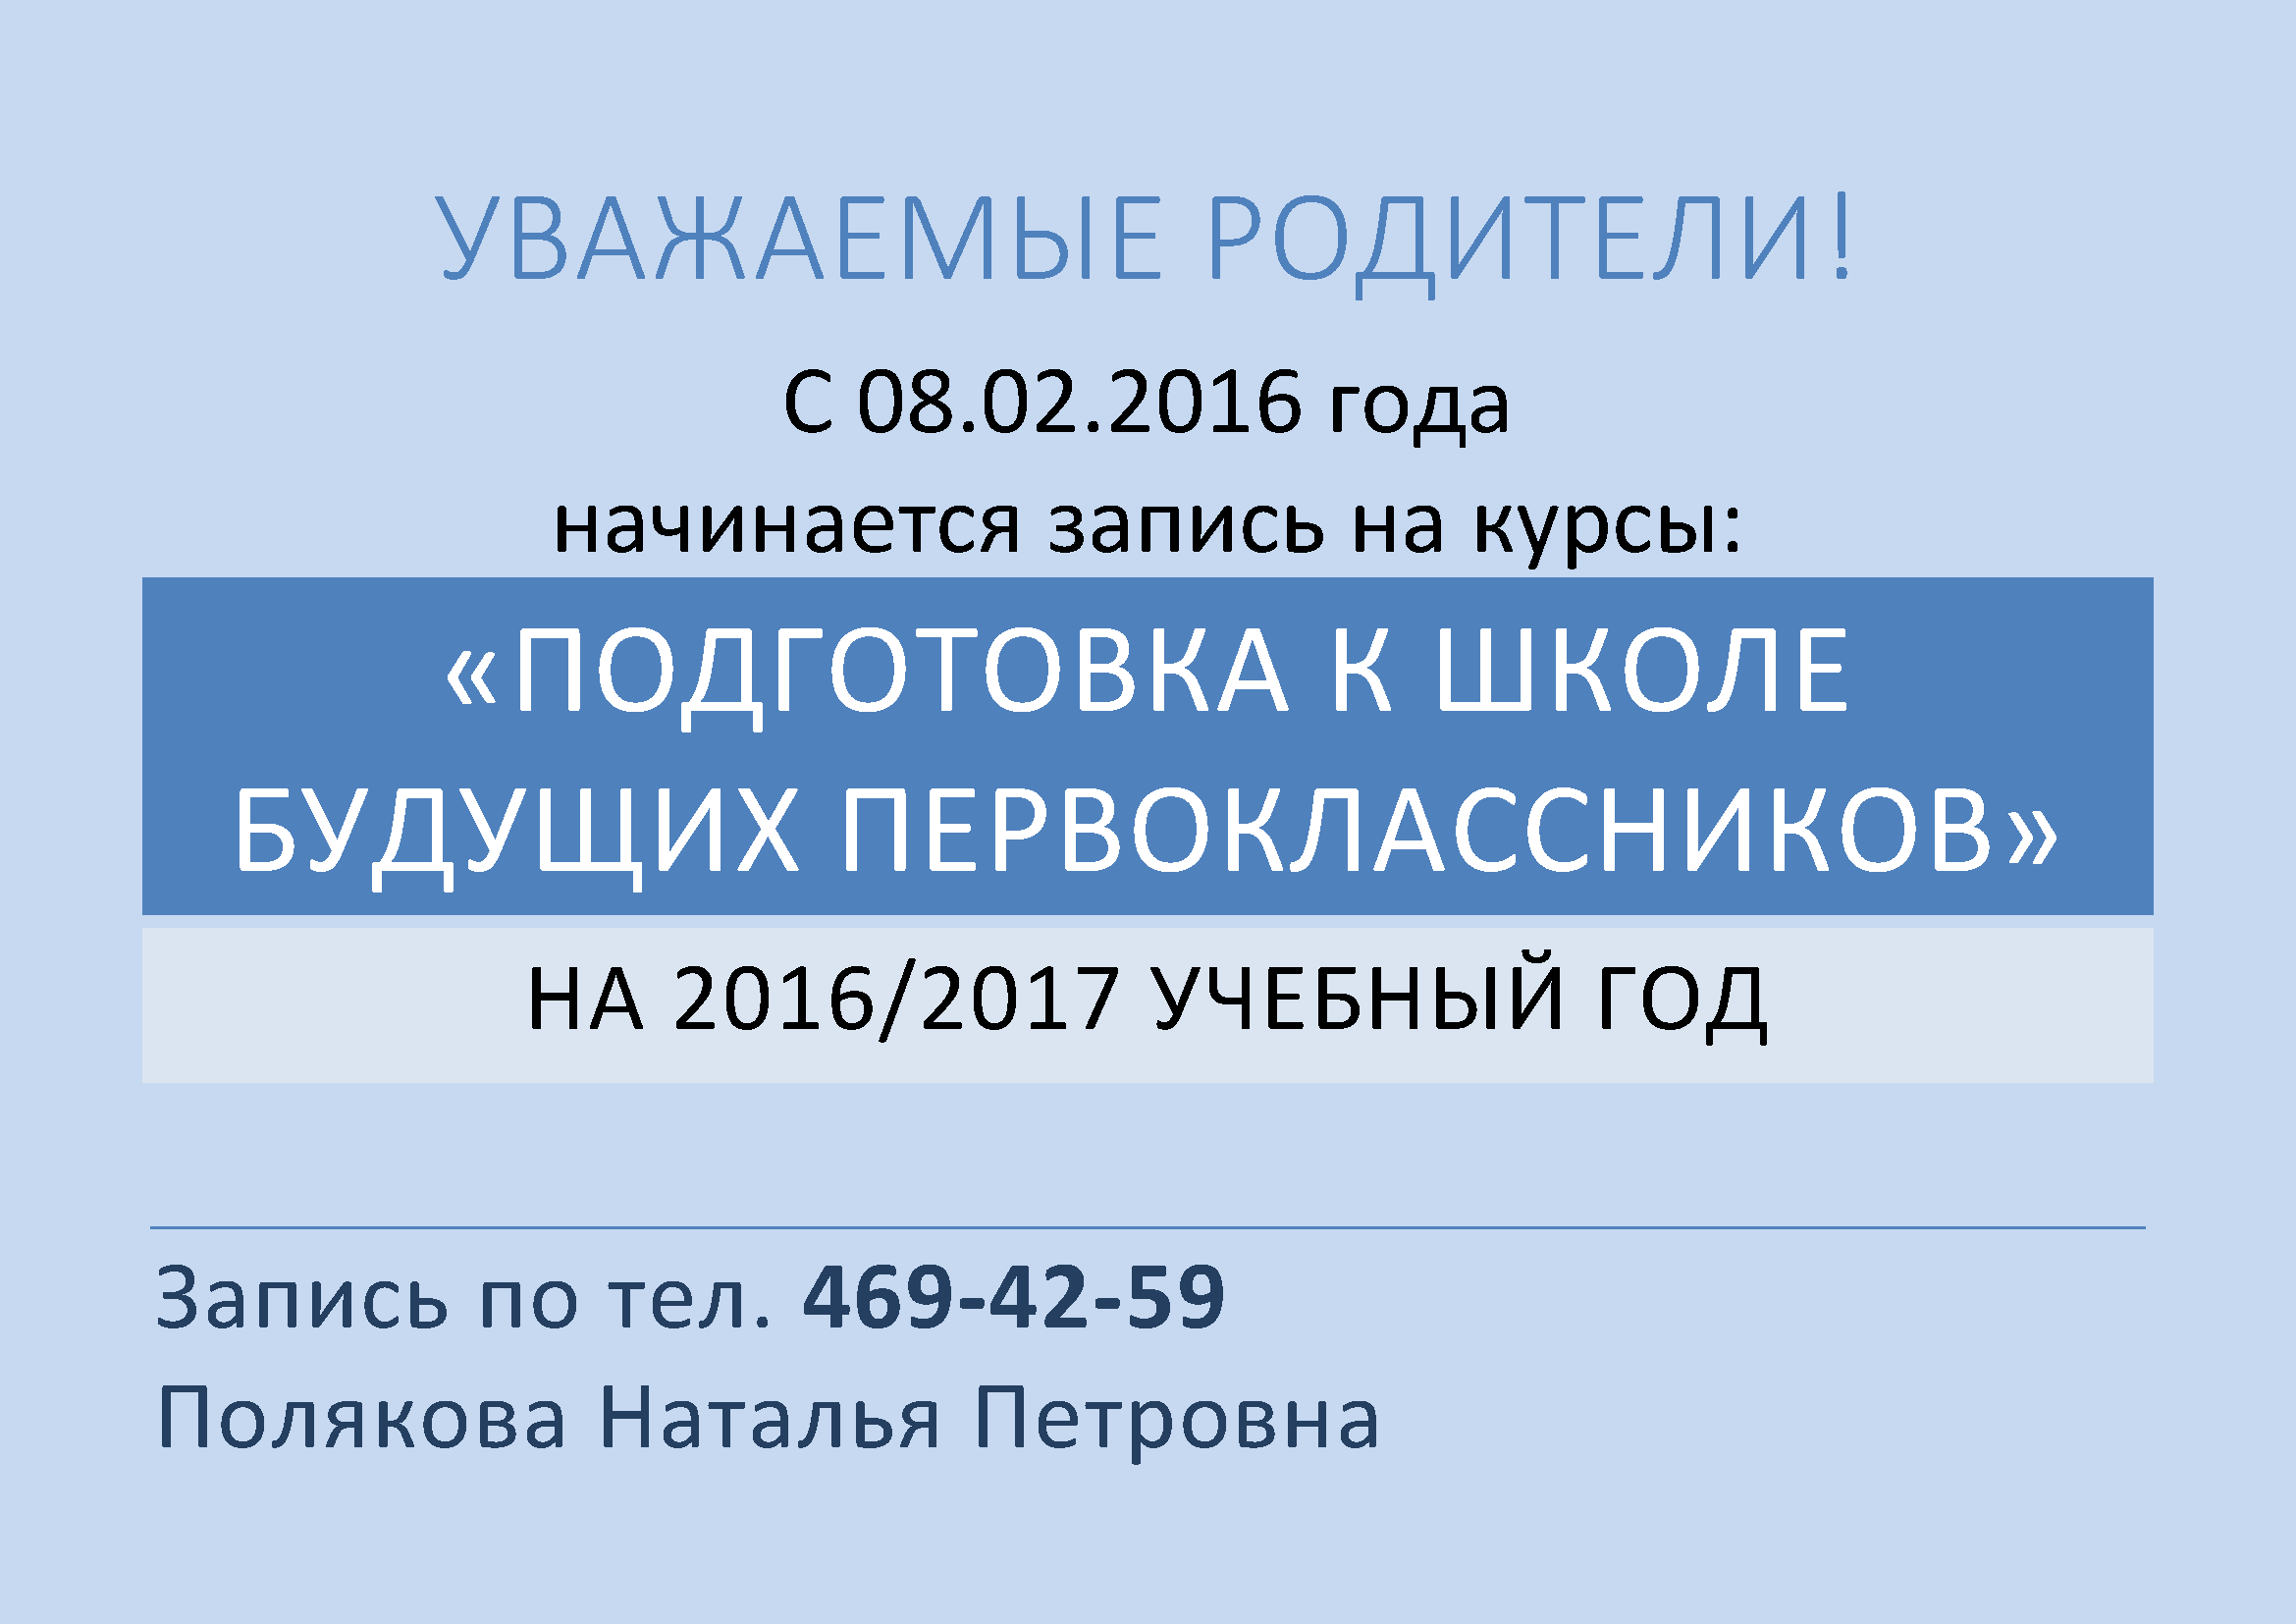 Запись на курсы первоклассников 2016-2017